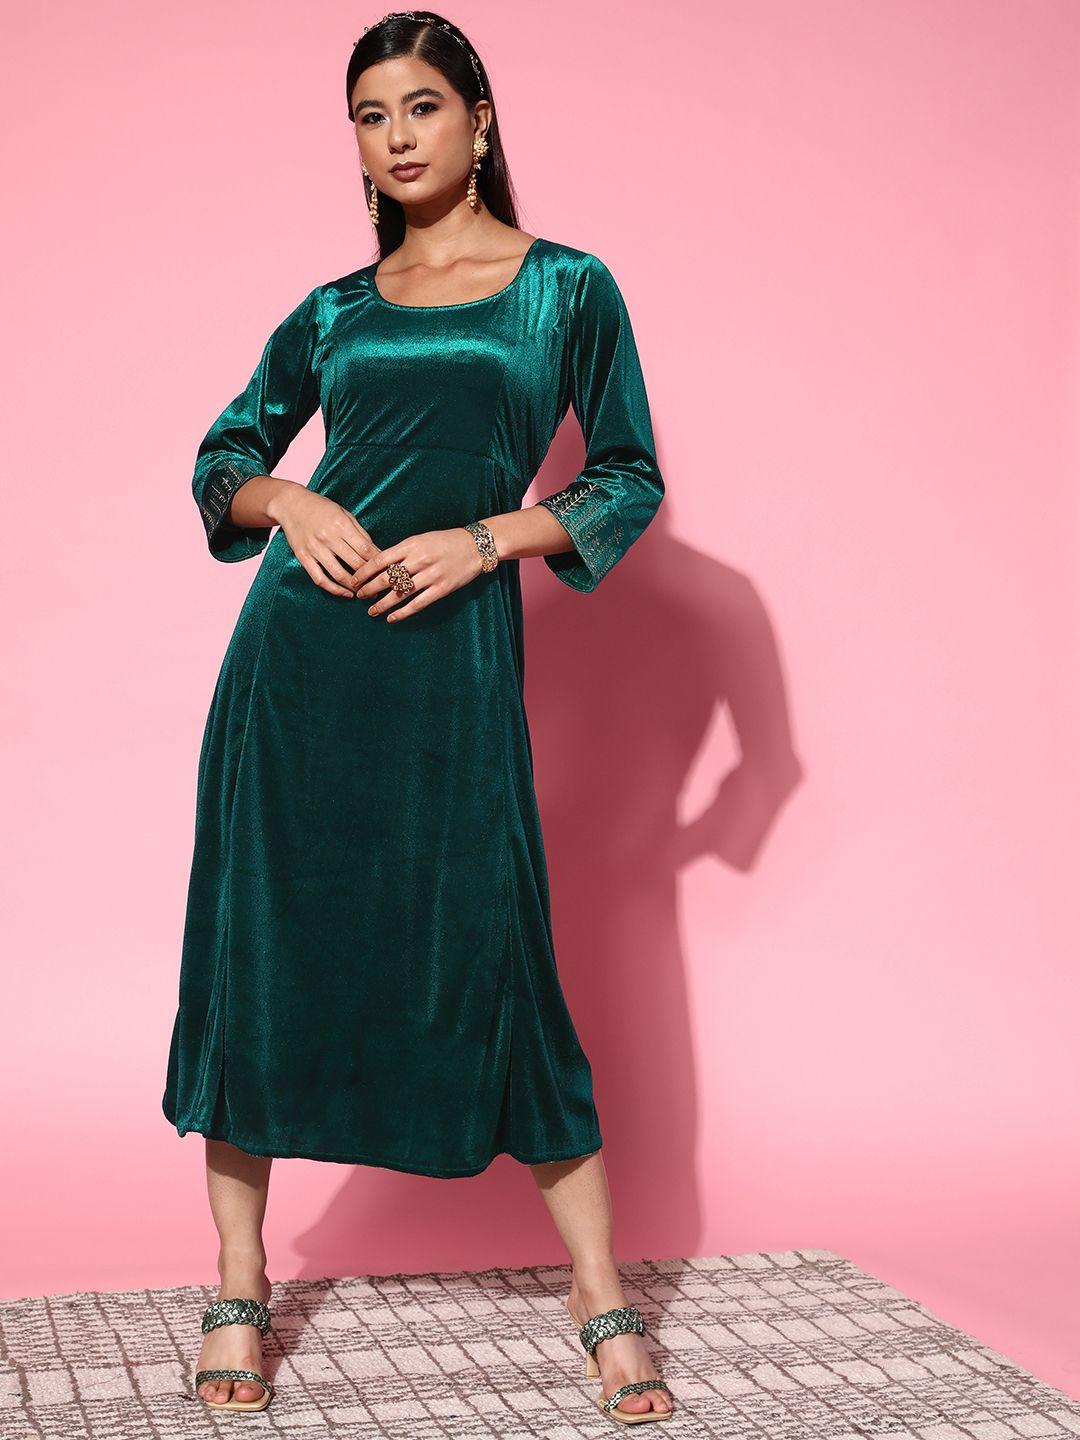 shae-by-sassafras-women-tranquil-teal-solid-velvet-dress